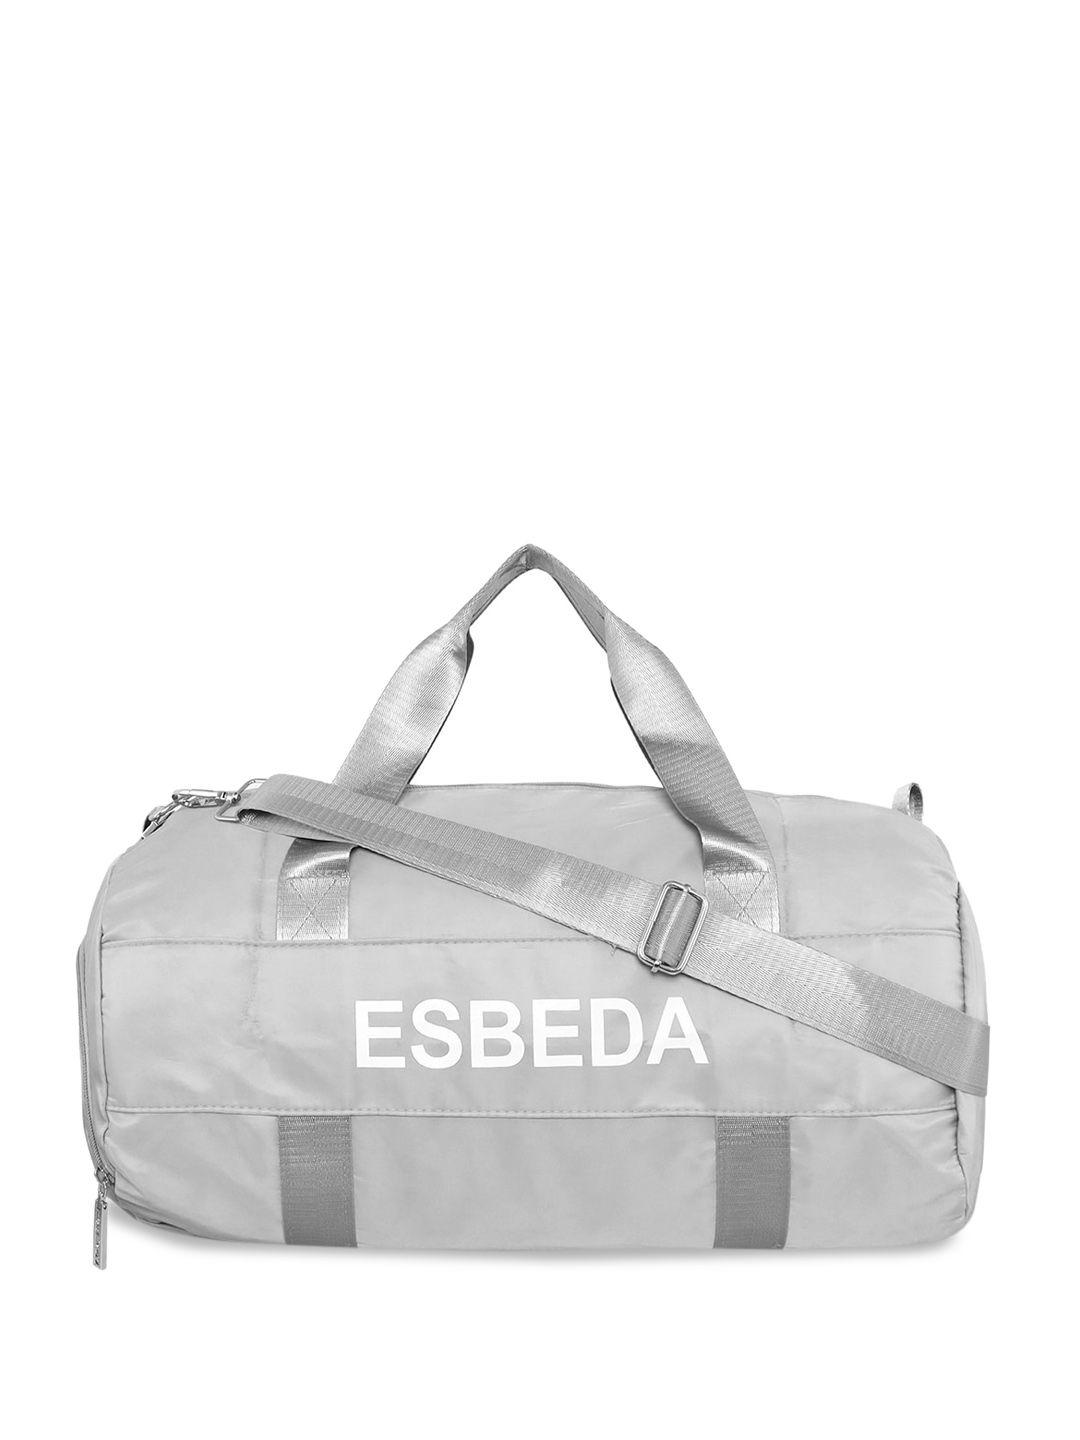 ESBEDA Brand Logo Gym Duffel Bag